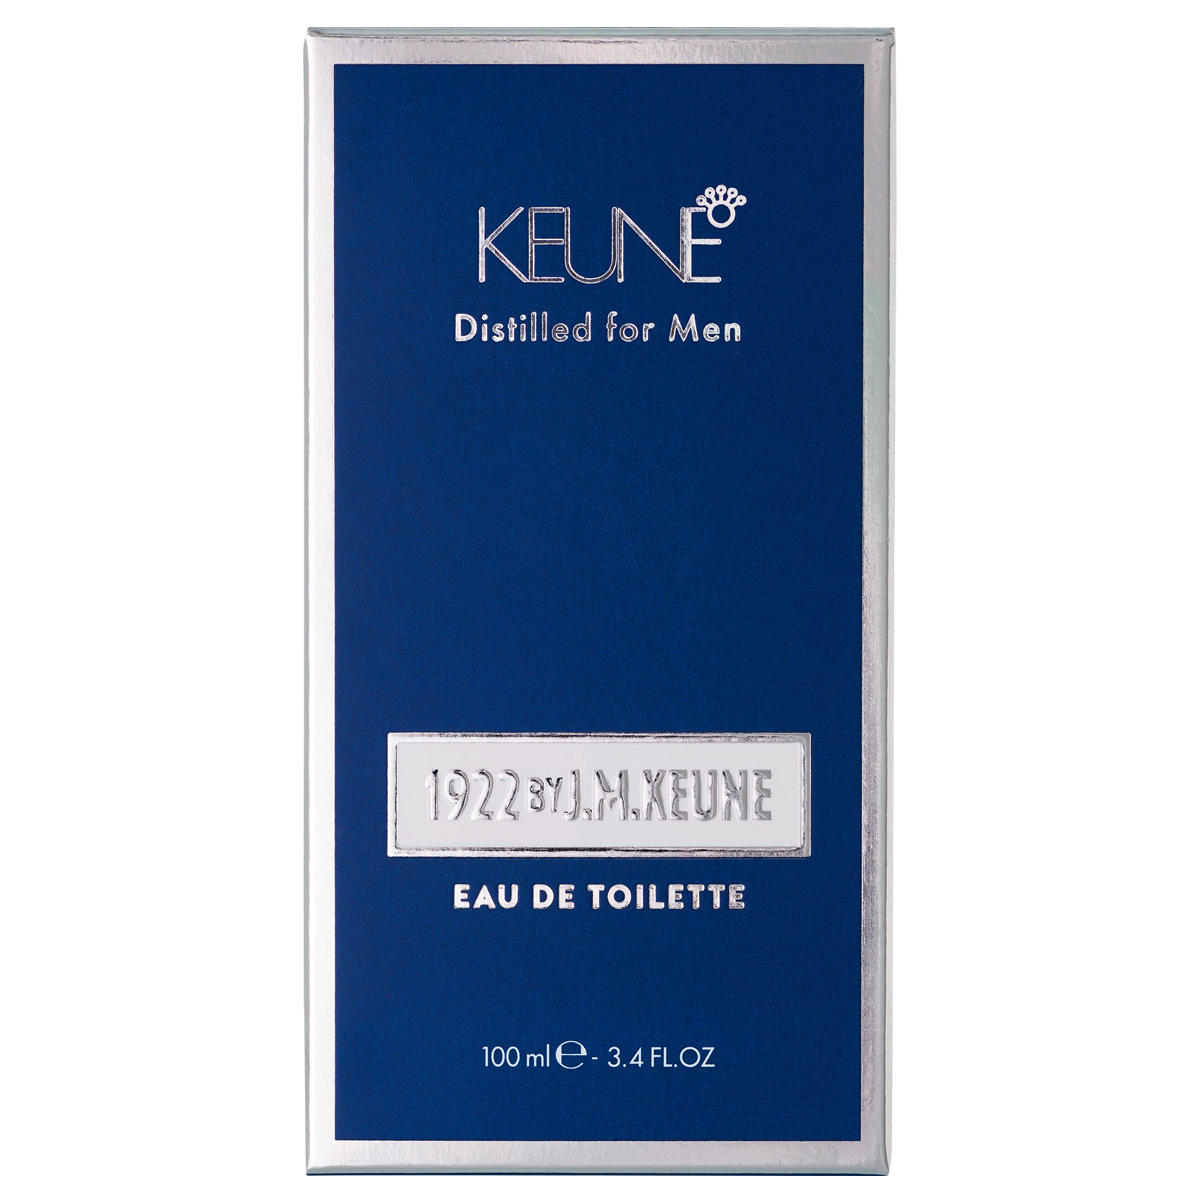 KEUNE 1922 Distilled for Men Eau de toilette 100 ml - 4